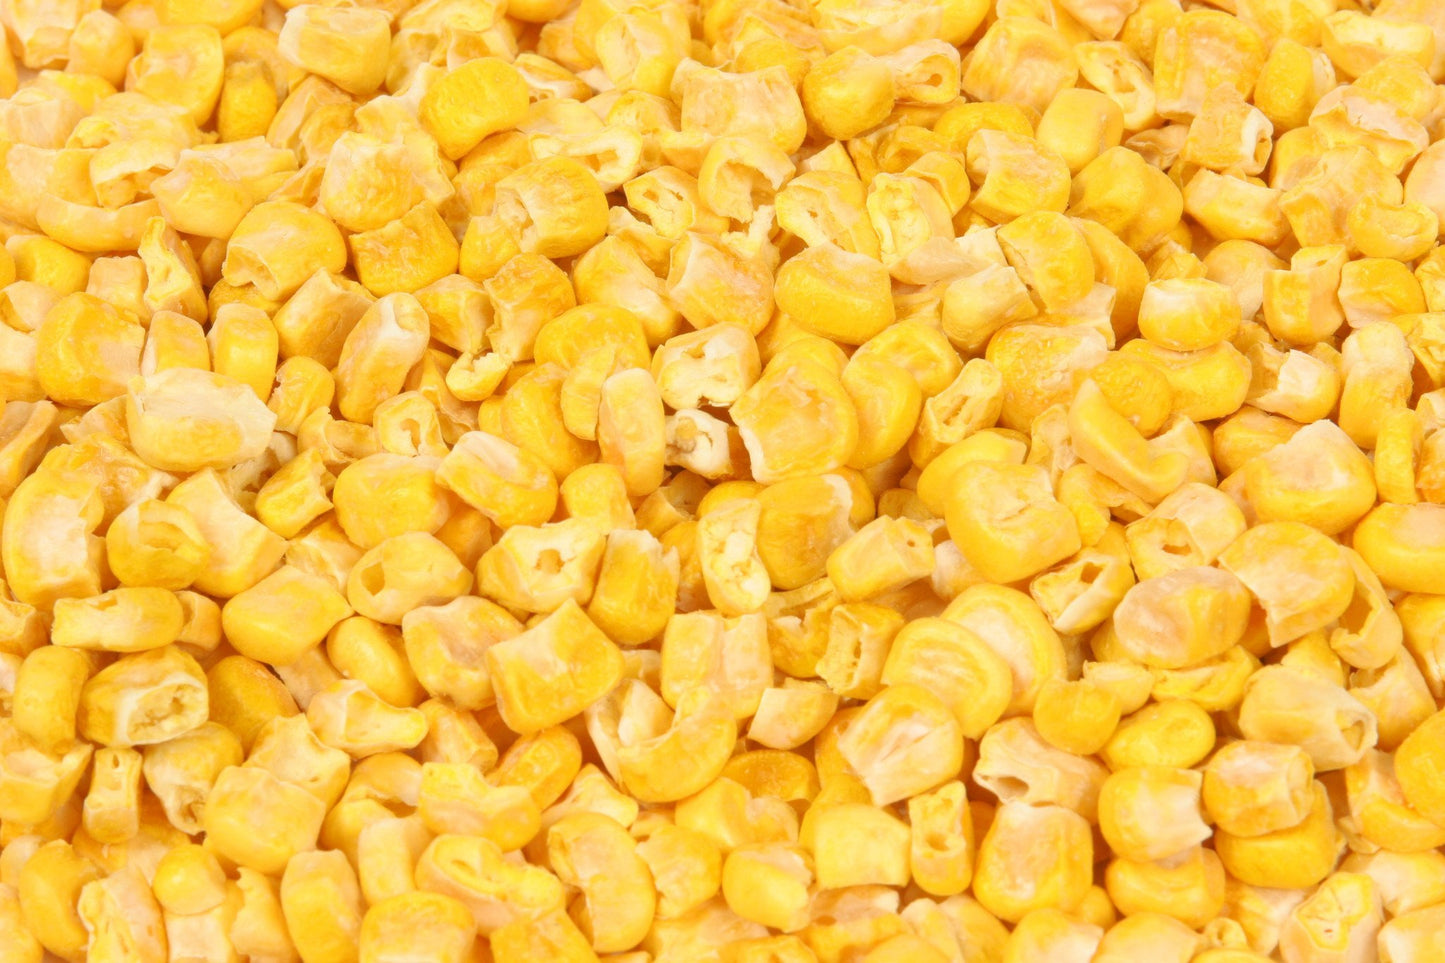 Just Corn - Karen's Naturals